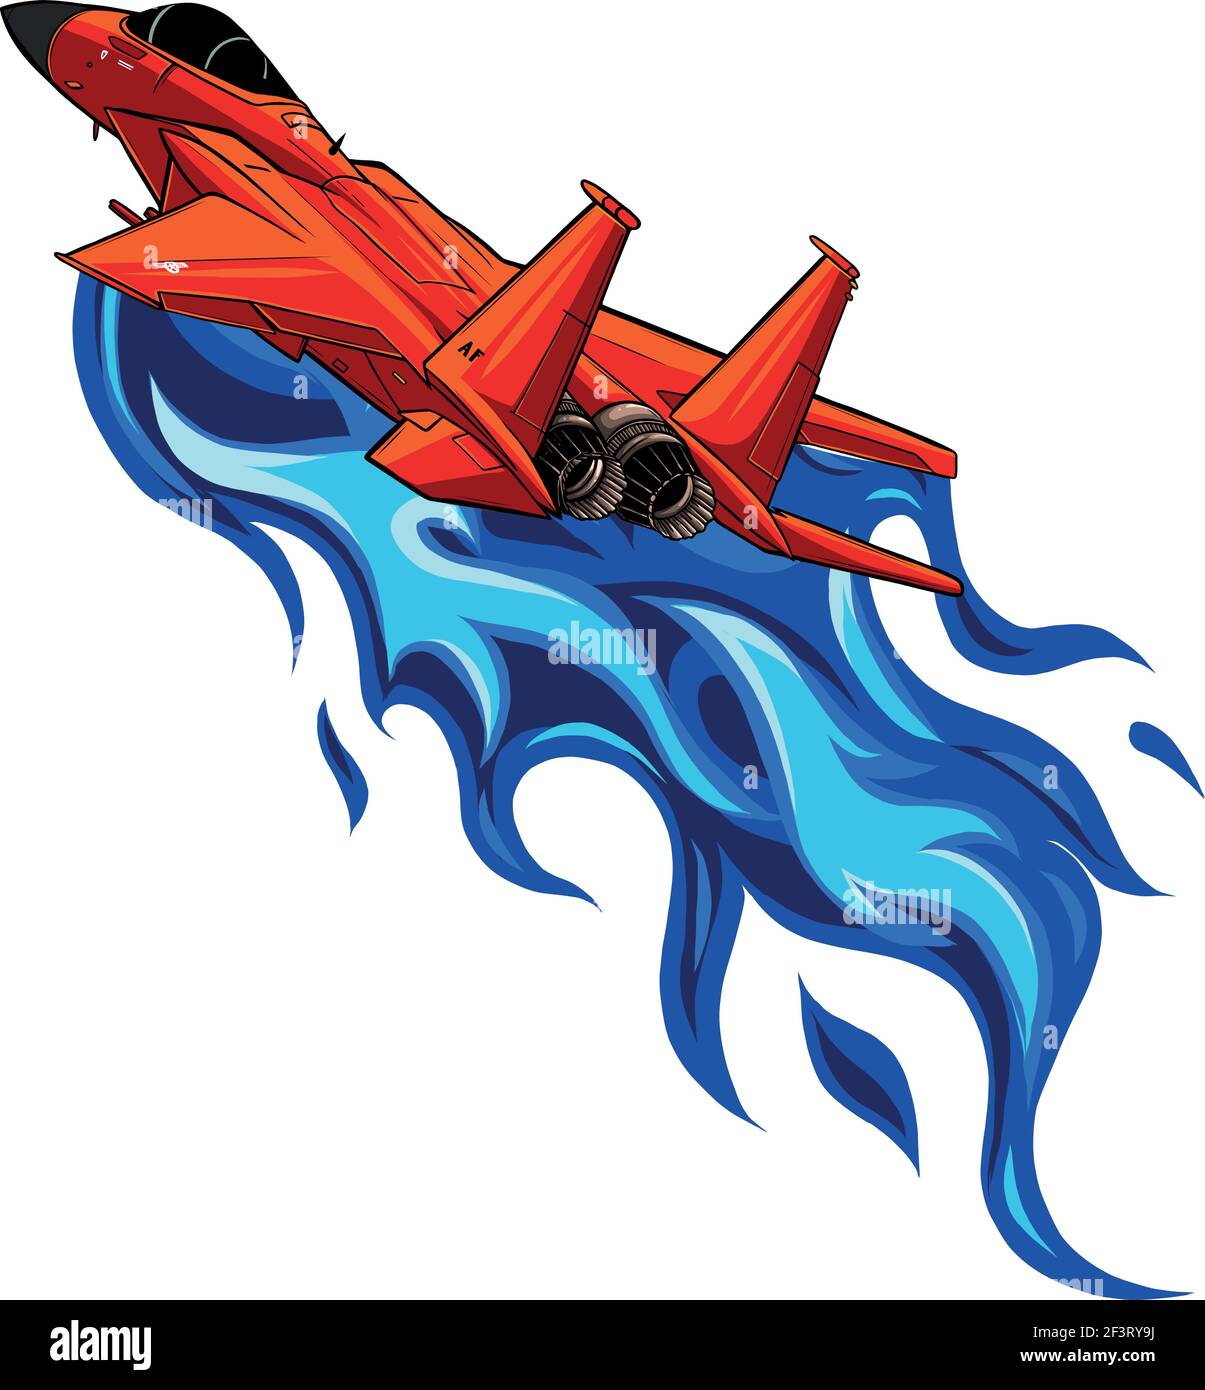 Illustration vectorielle des avions de chasse rouges fiery Military Illustration de Vecteur